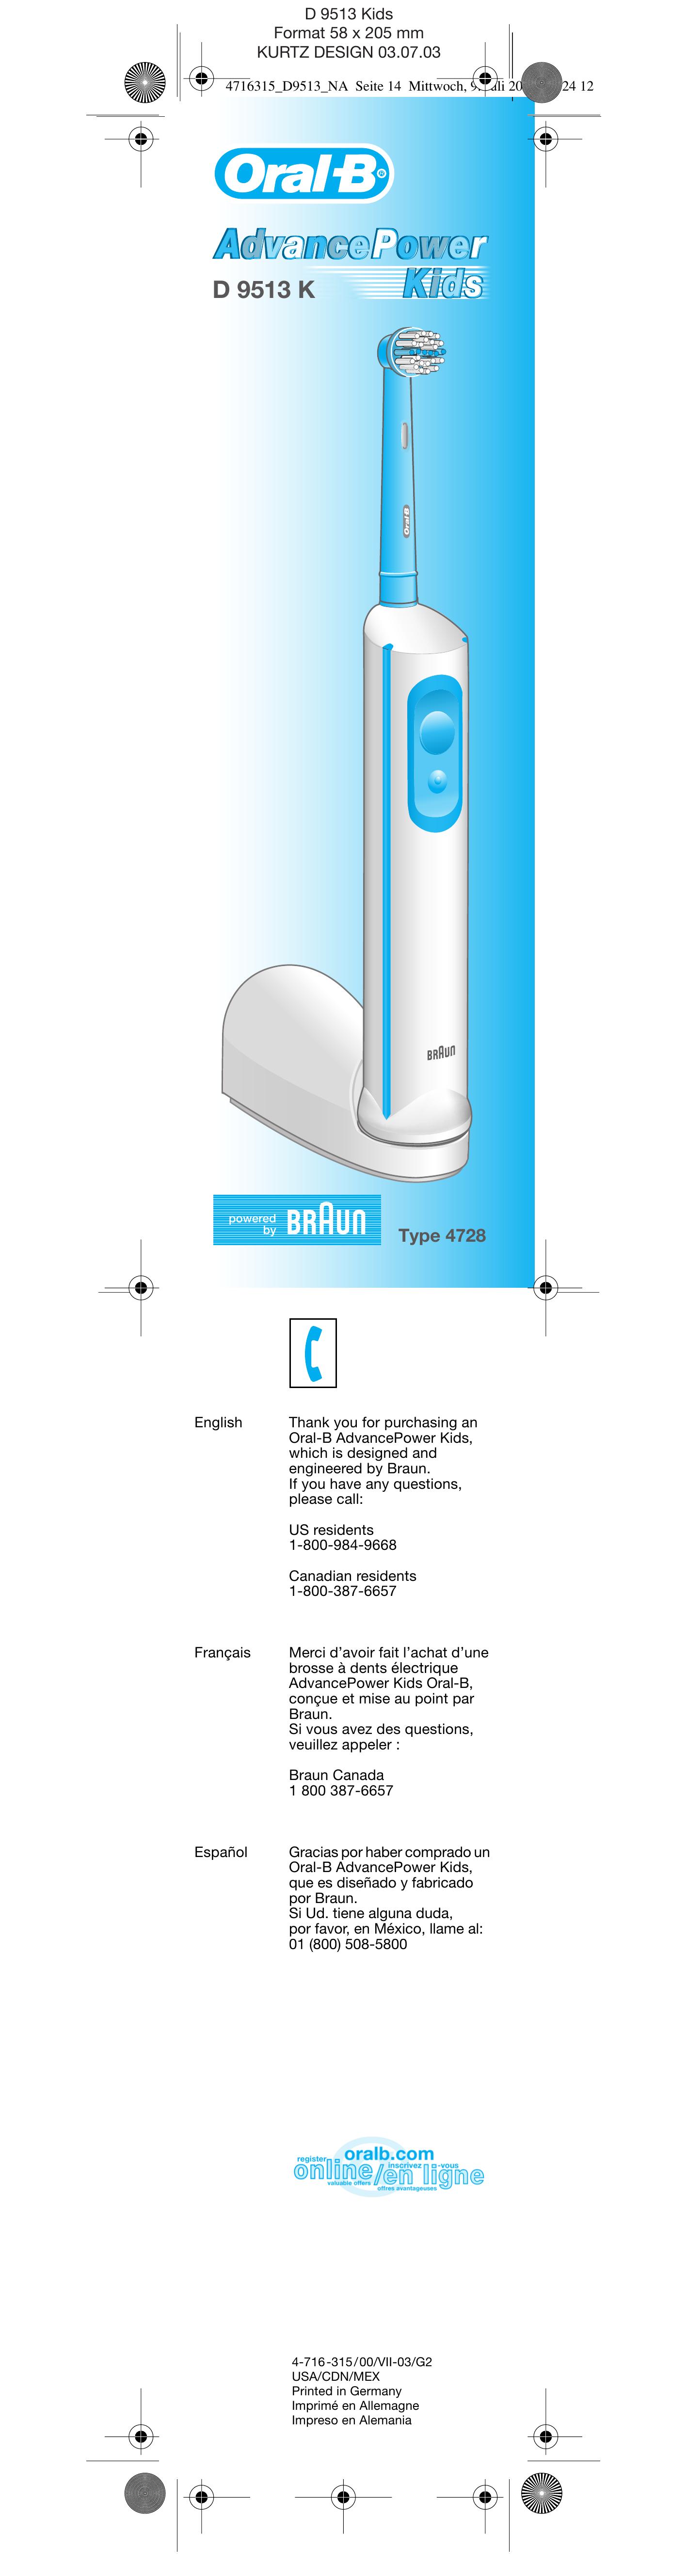 Braun 4728 Series Electric Toothbrush User Manual